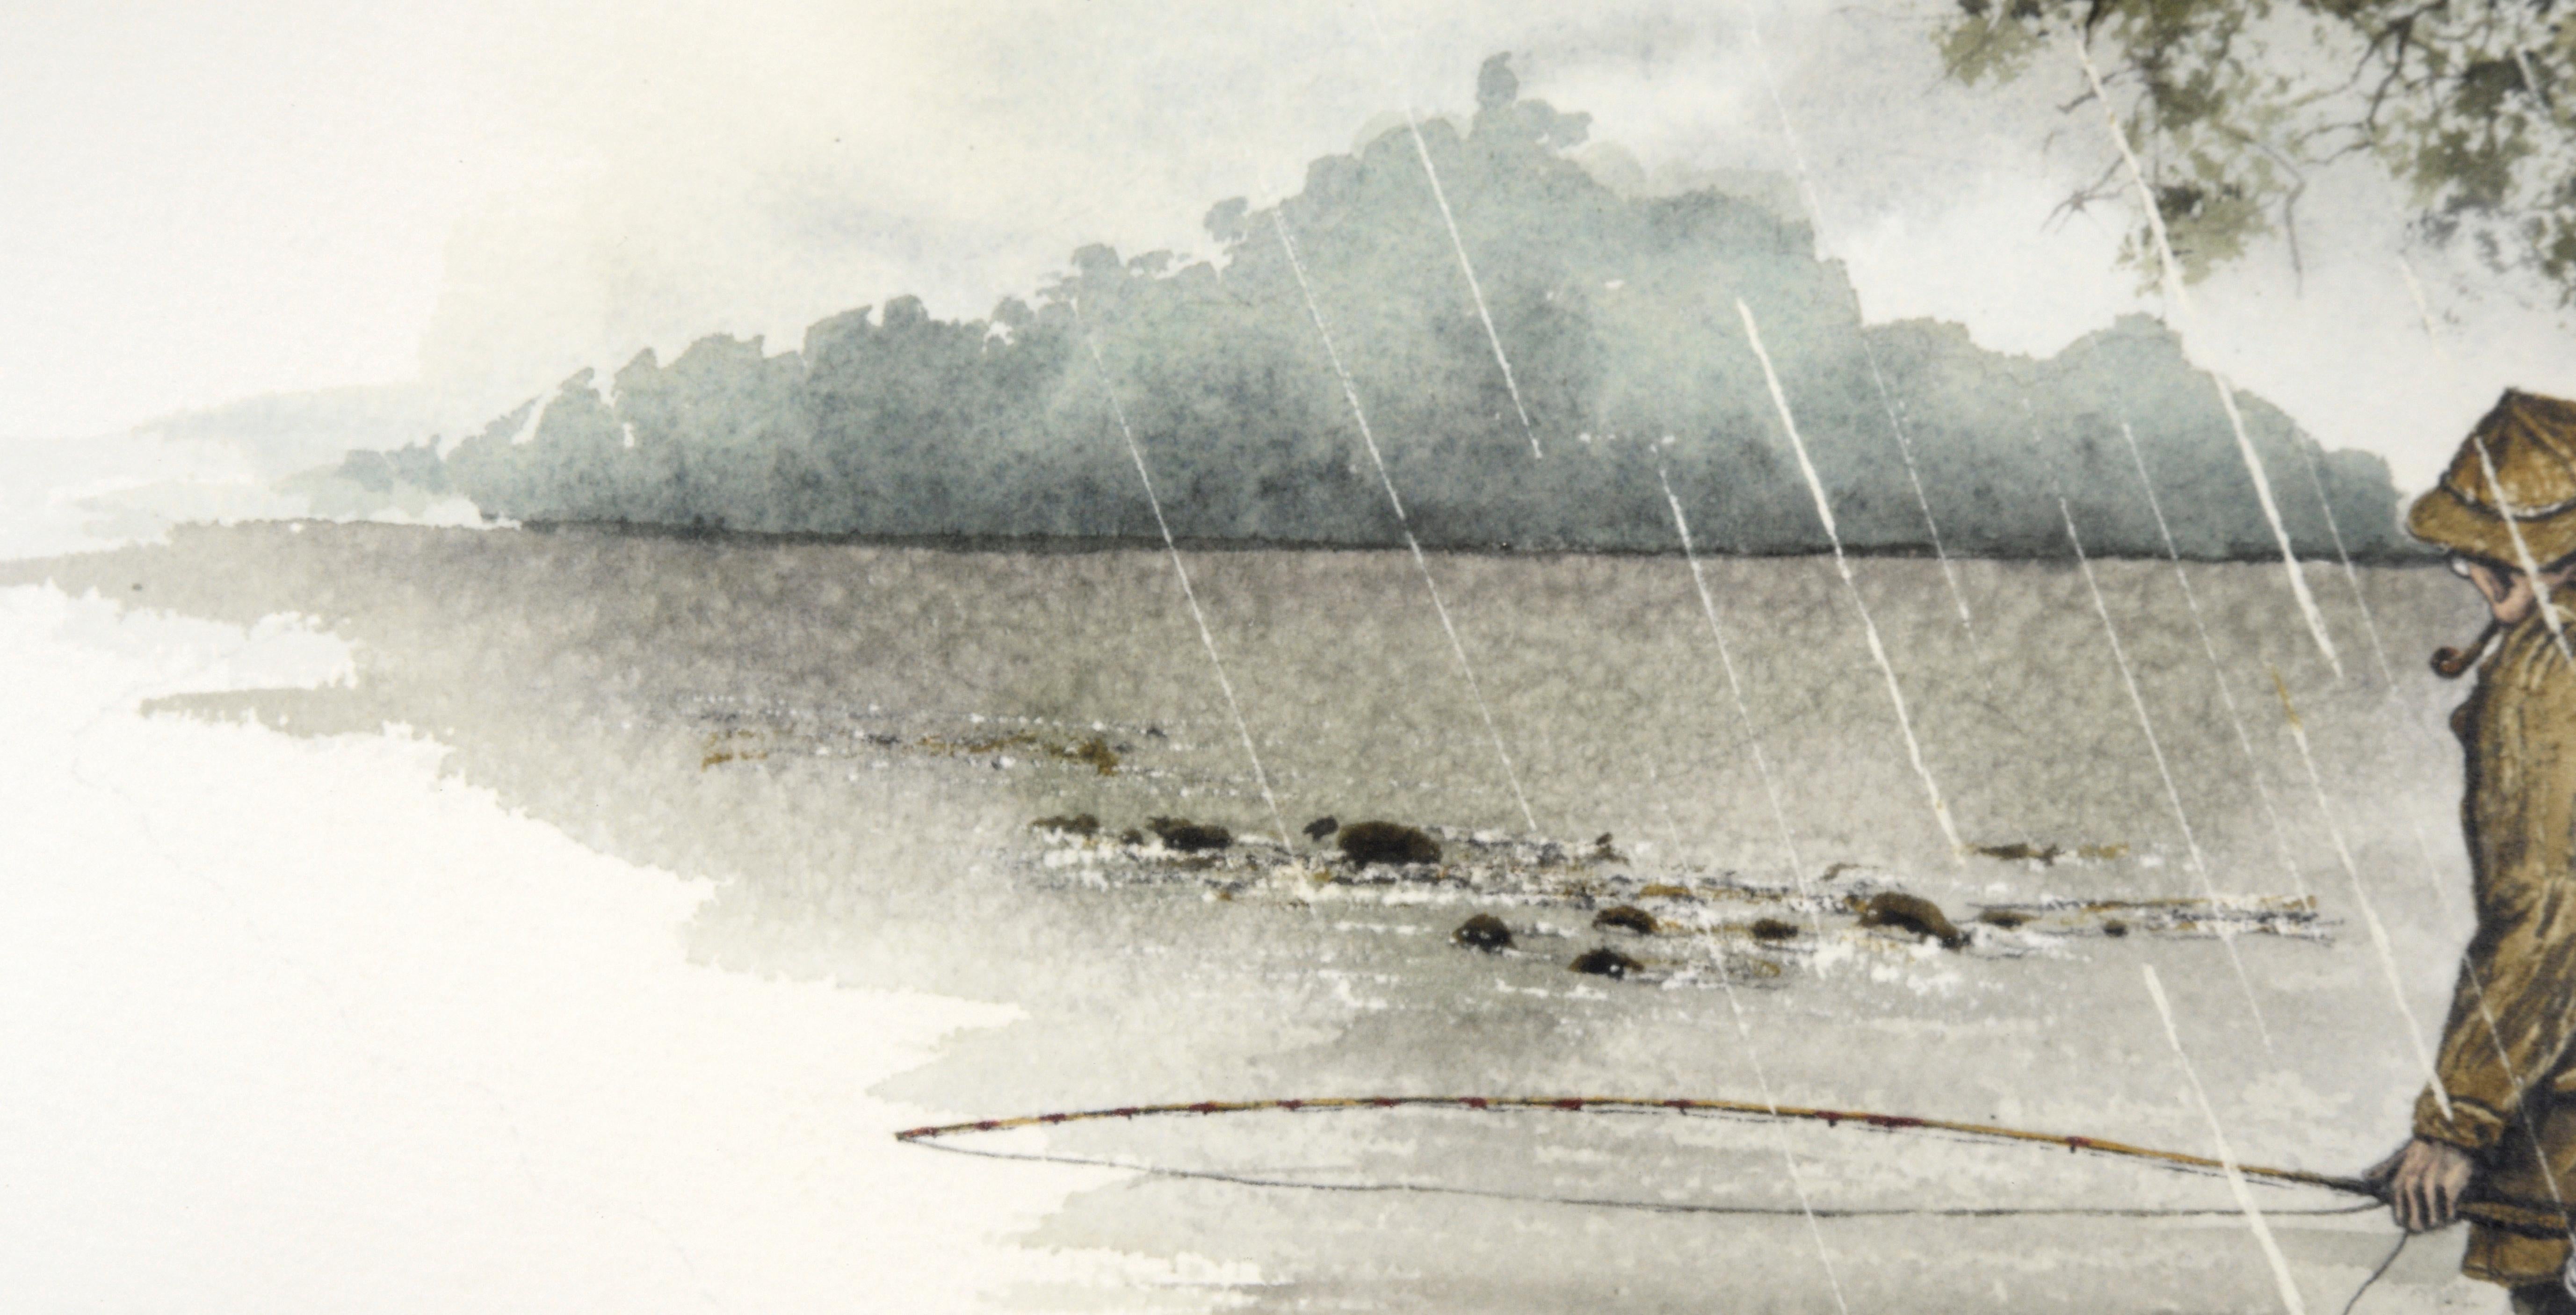 Délicate représentation d'un pêcheur à la mouche sous la pluie par Harvey Eckert (américain, 1946-2018). Cette aquarelle de paysage très détaillée représente un homme pêchant sous la pluie, pataugeant dans l'eau tout en fumant une pipe sous un